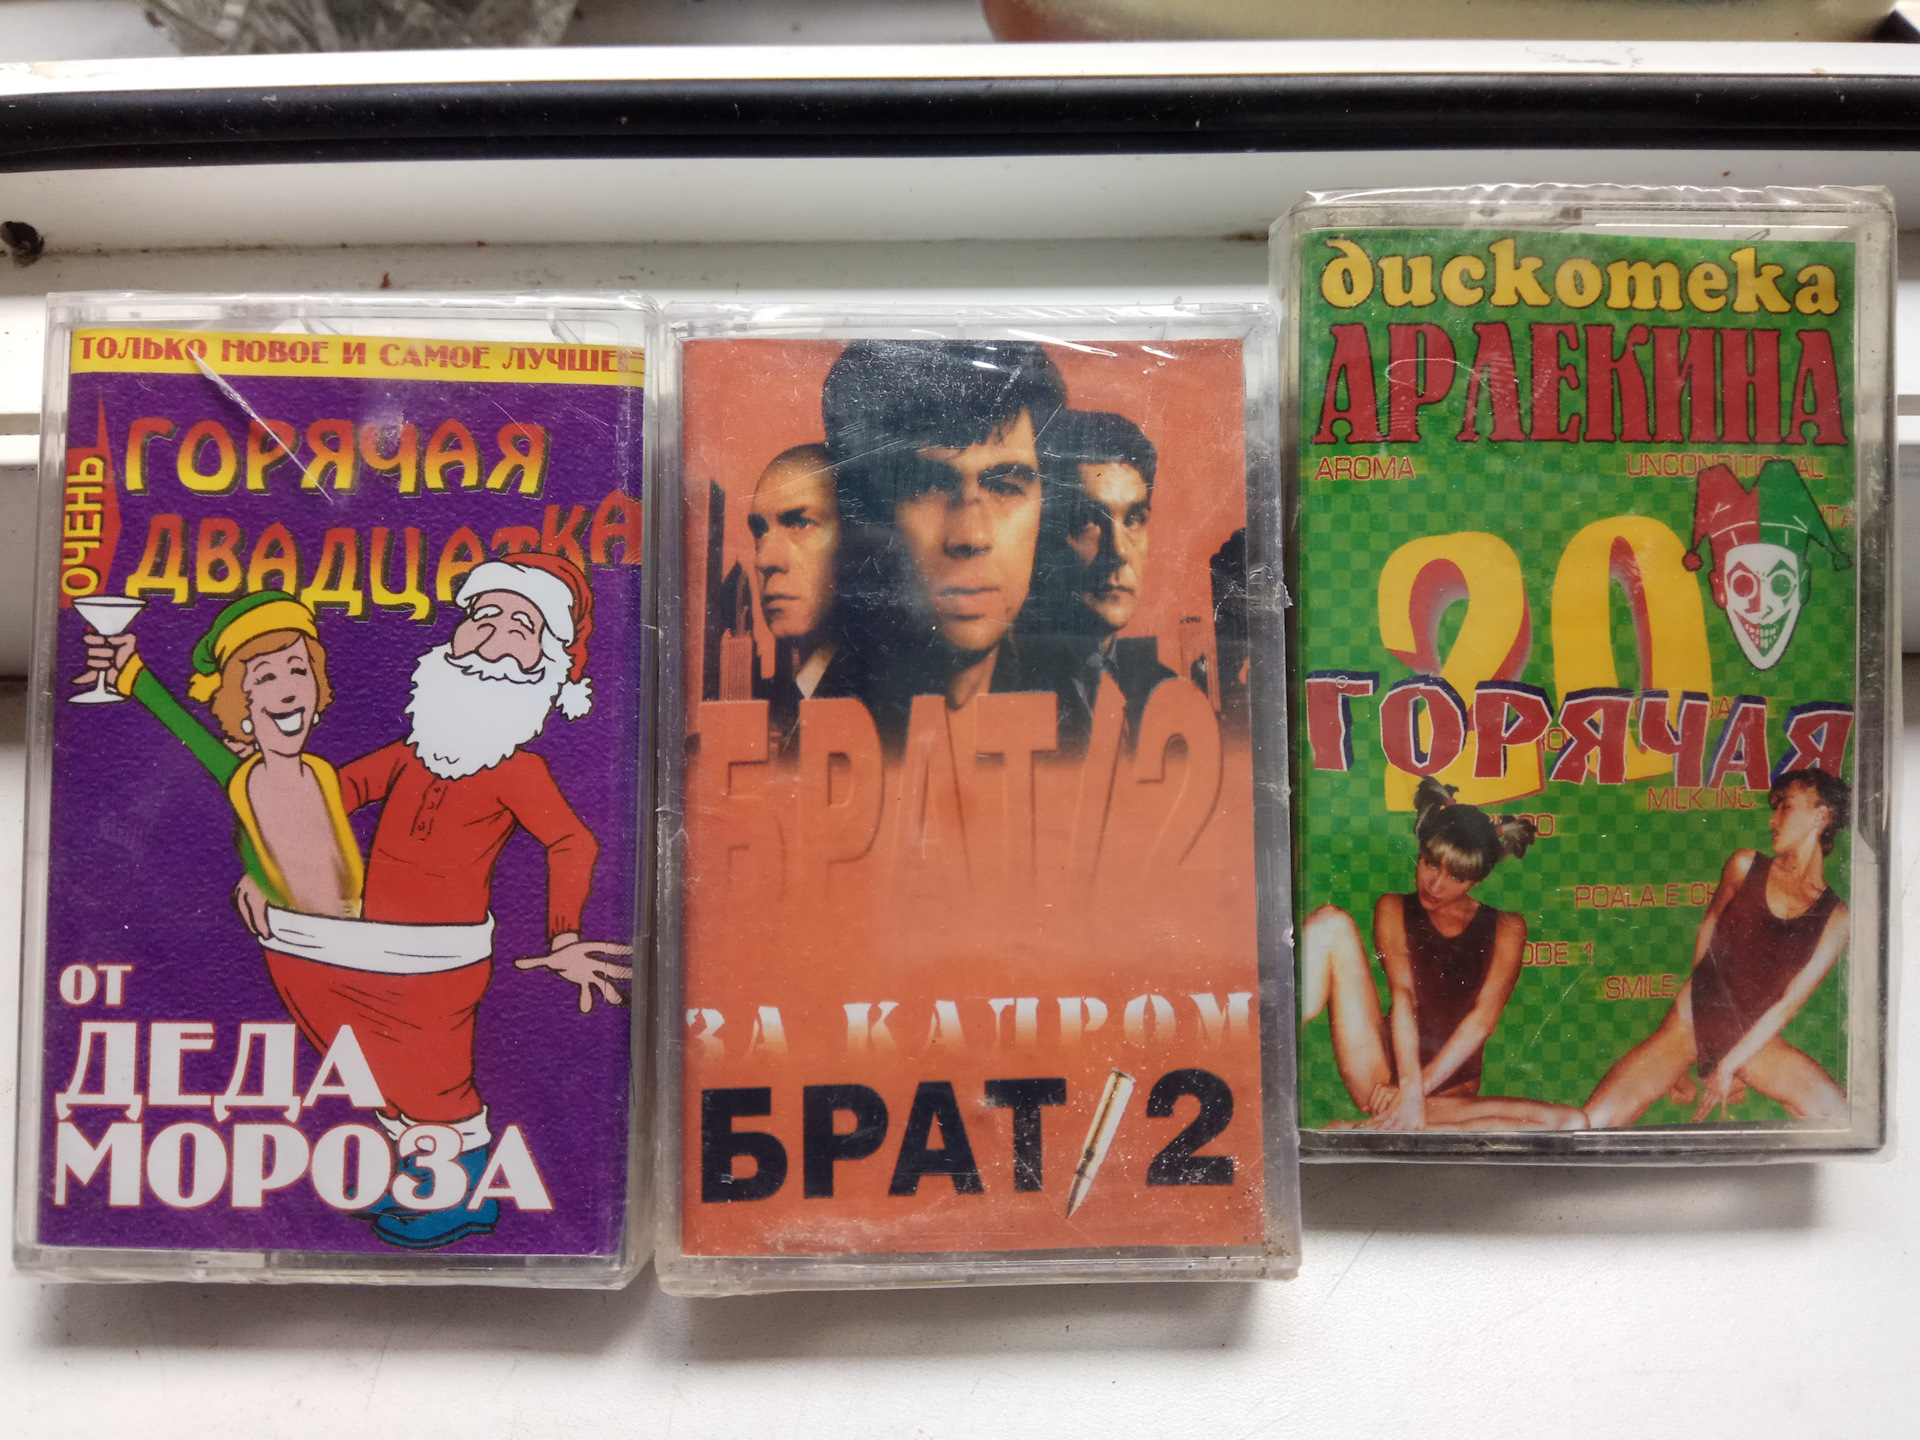 Батину кассету. Батина видеокассета. Запечатанные видеокассеты 90-х. Татар кассеты. Видеокассета с порнушкой.